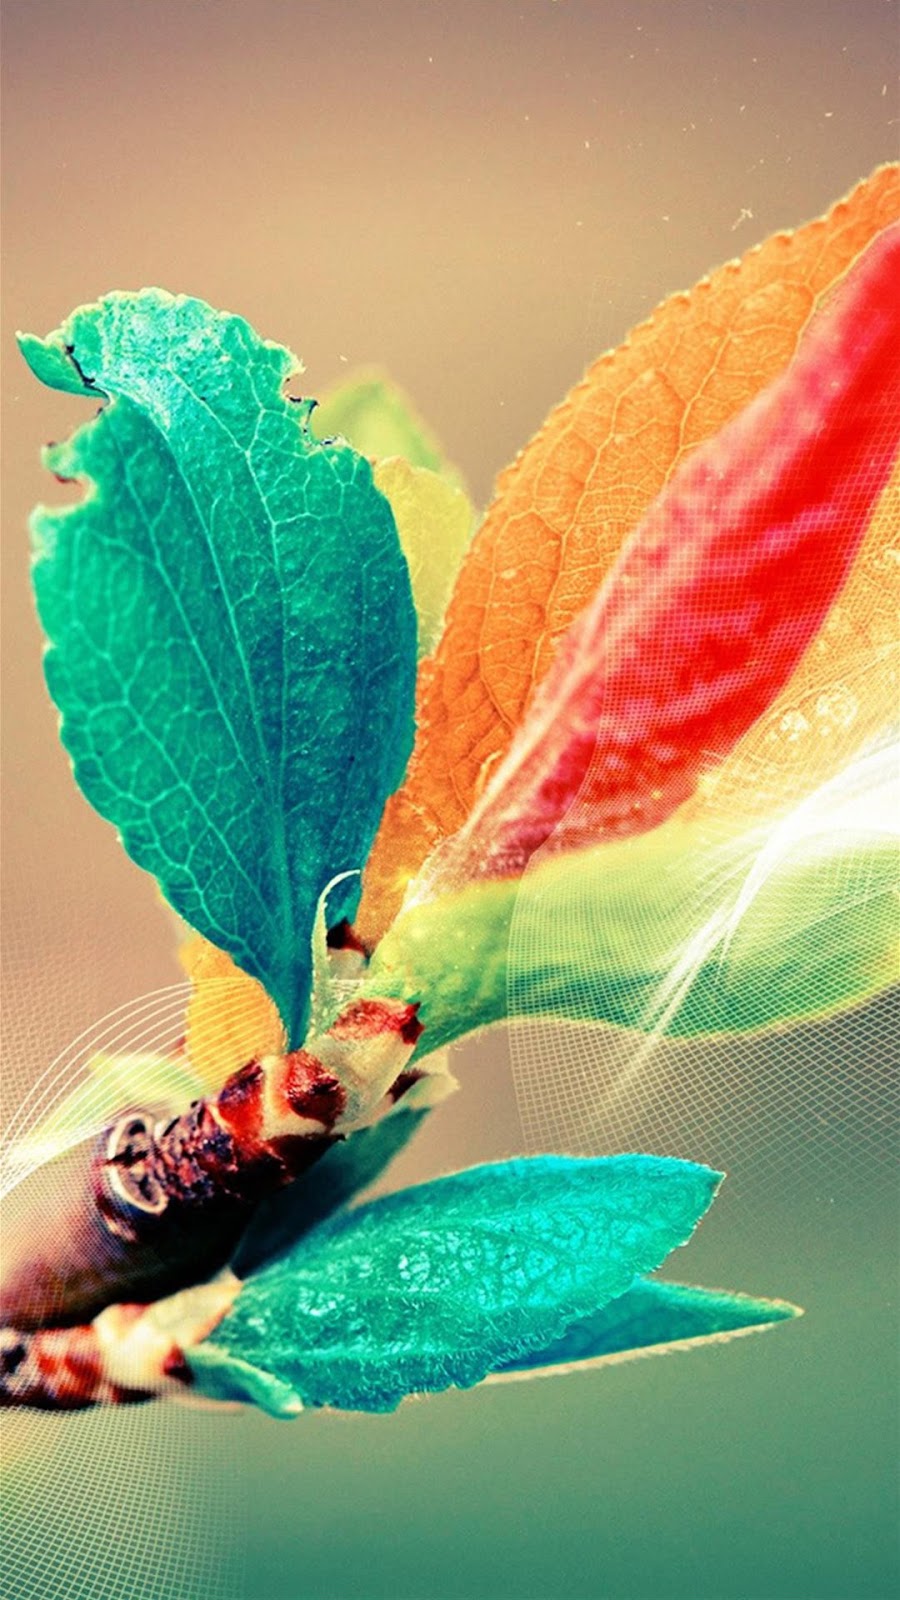 Wallpaper Android Abstrak Colorful Bunga Bercabang